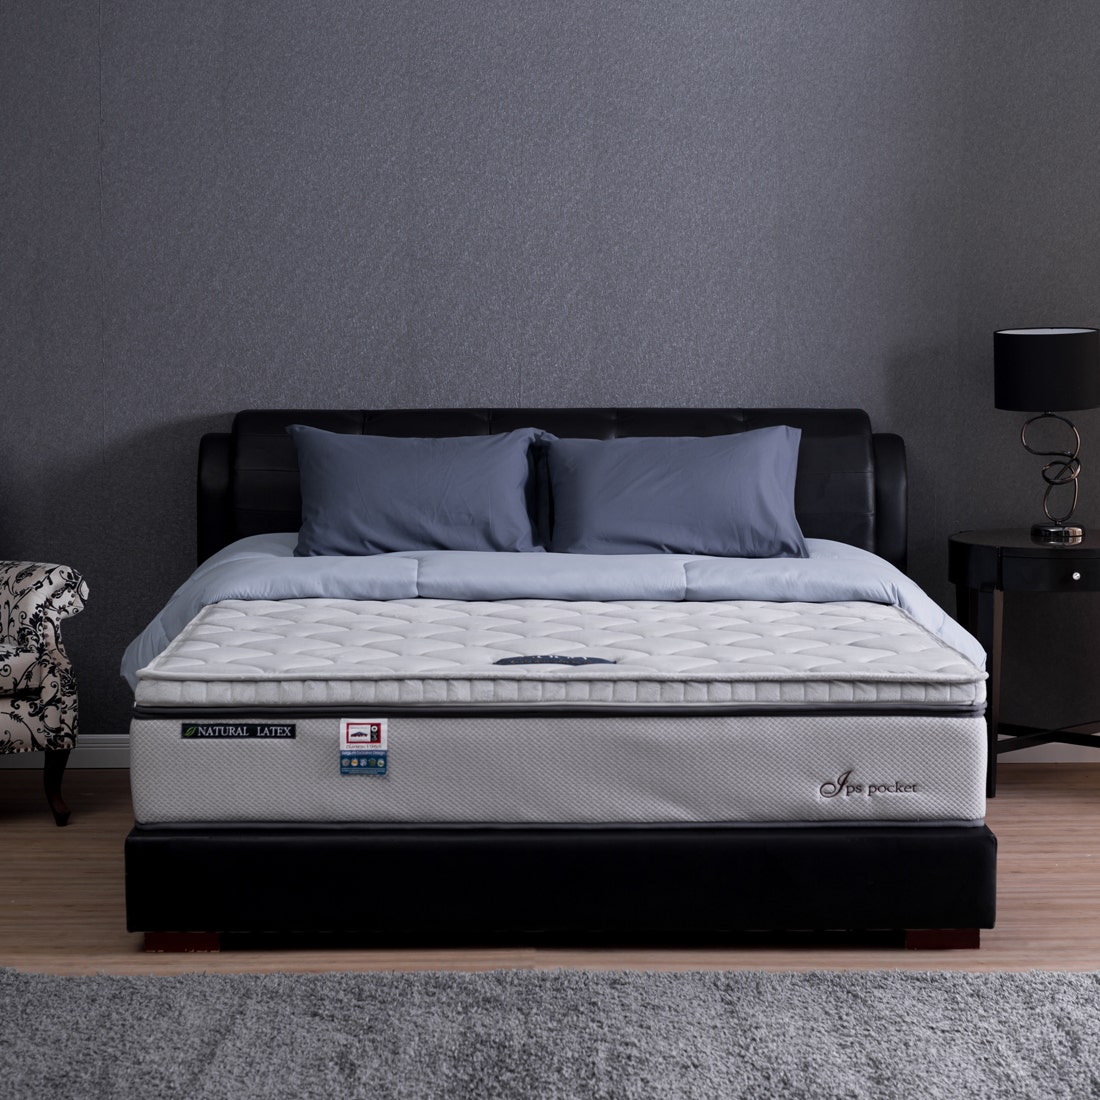 39001259-mattress-bedding-mattresses-pocket-spring-mattress-31